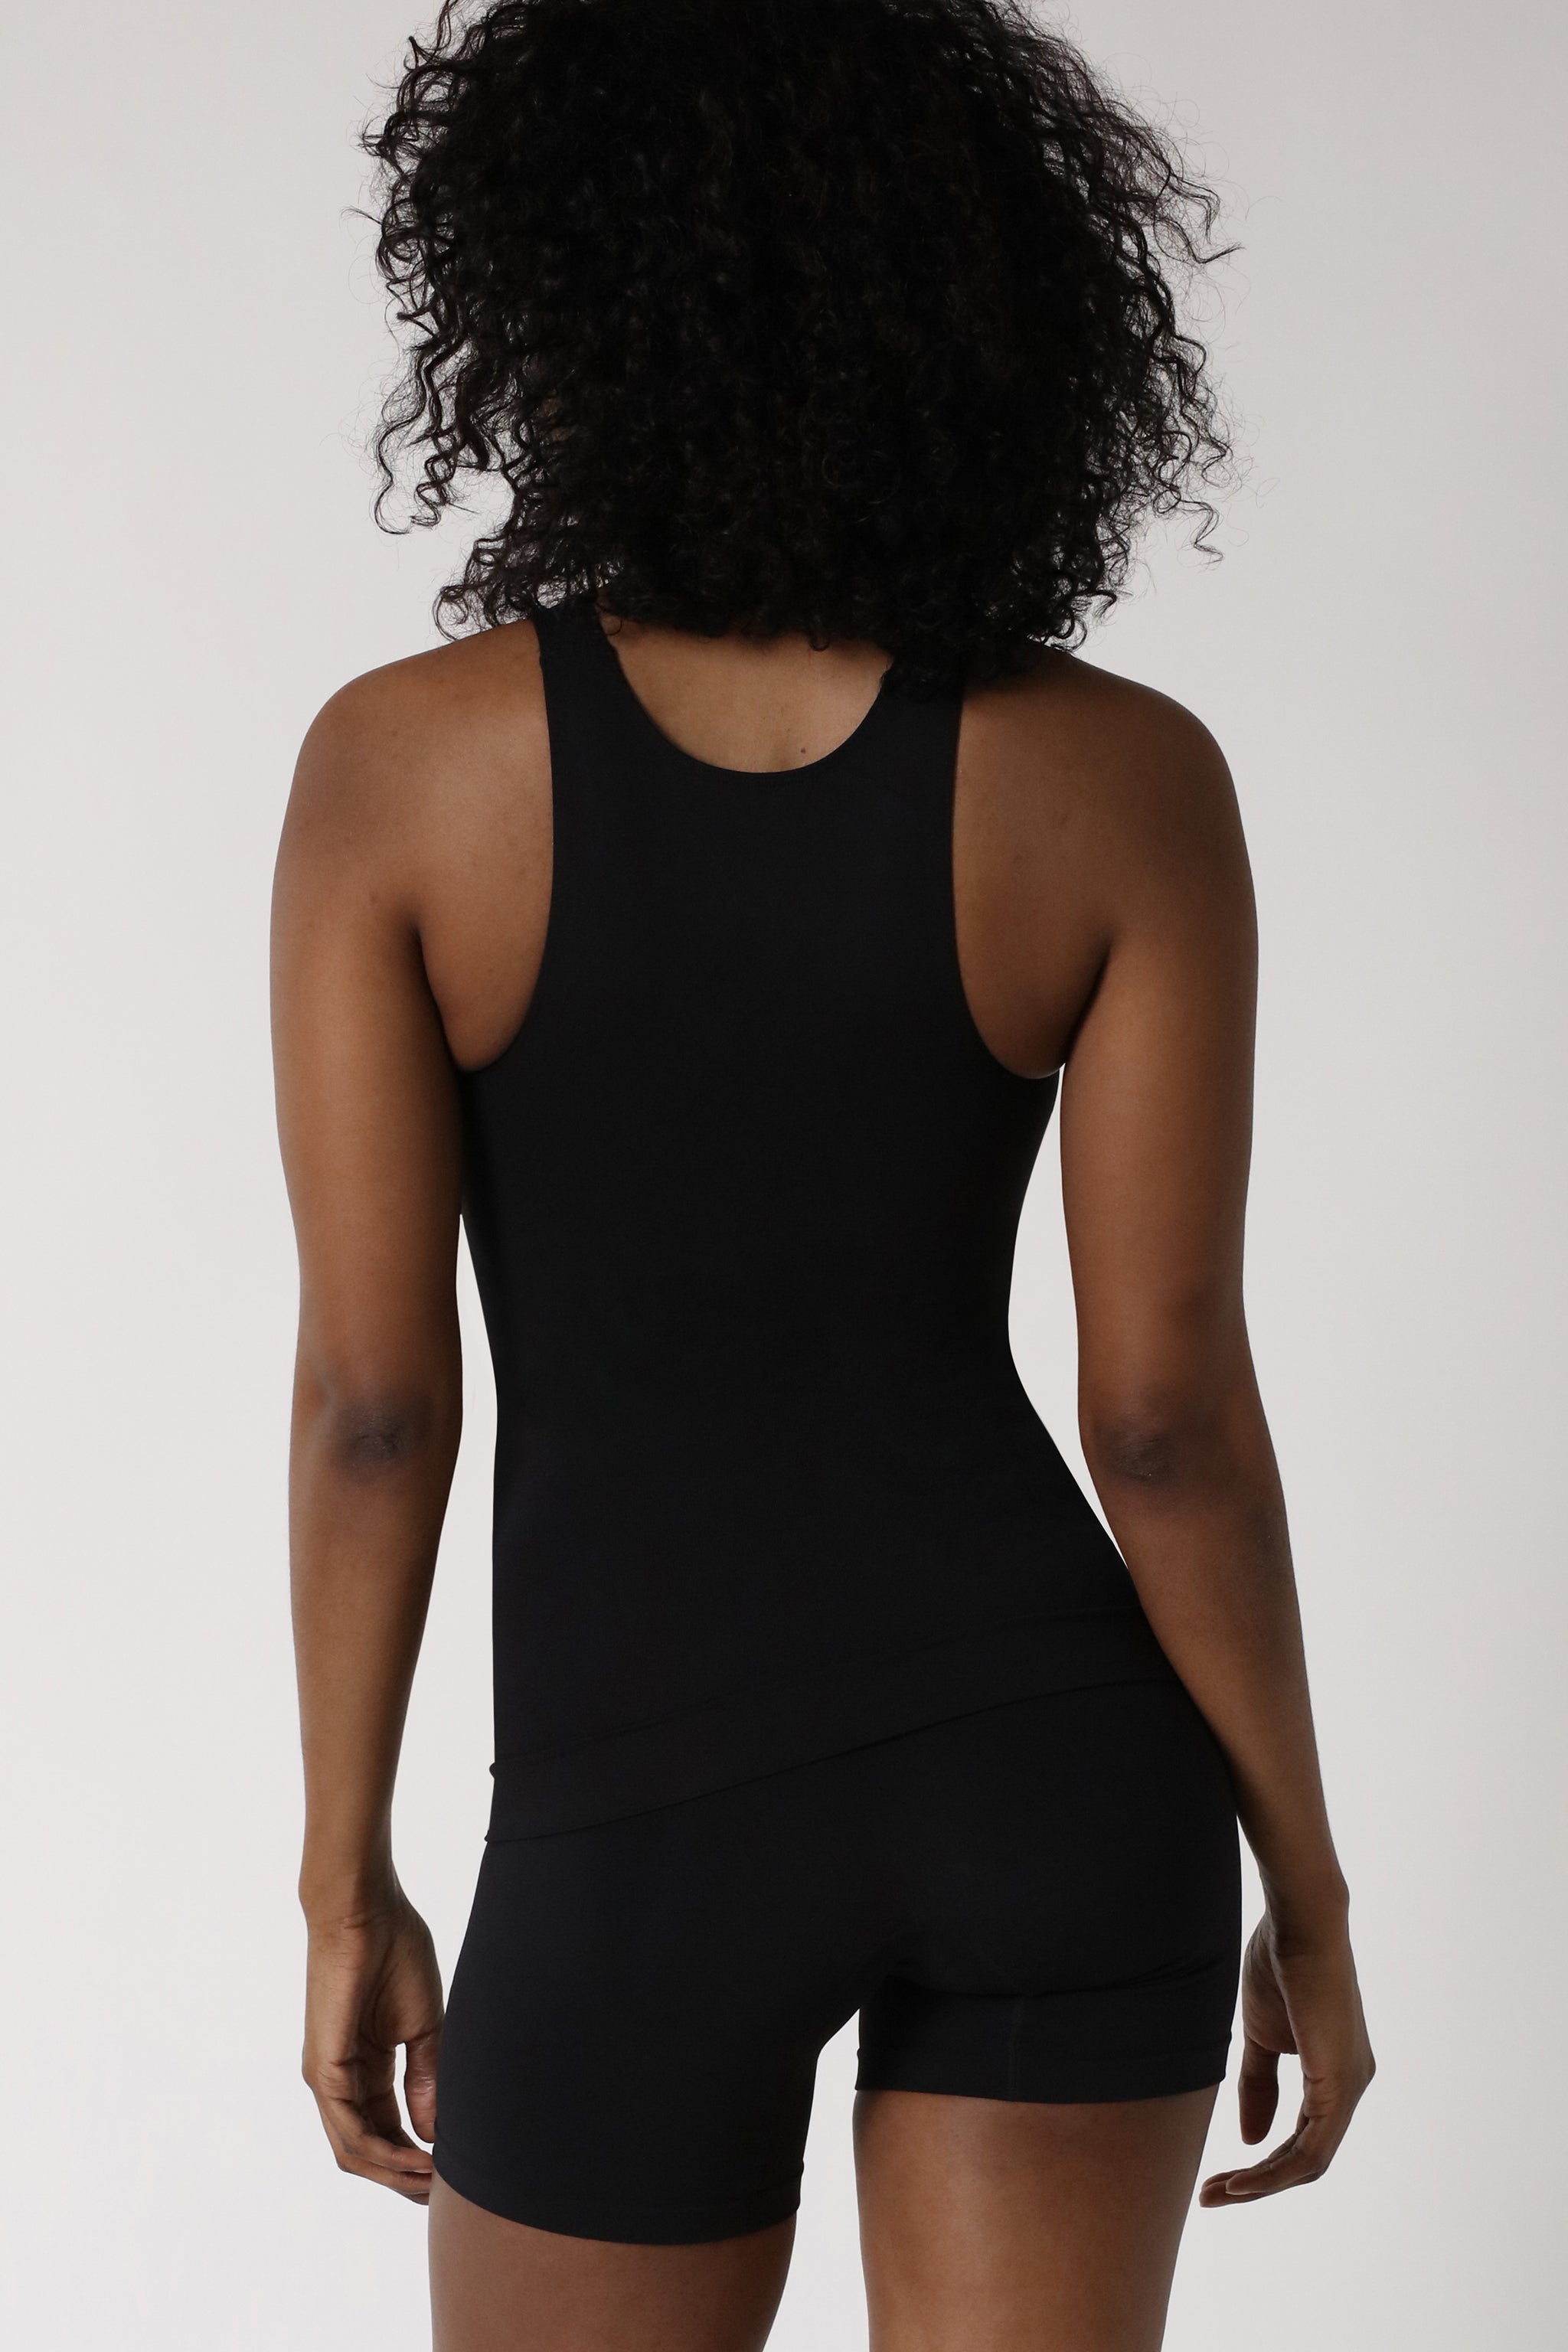 Shapewear Kollektion repräsentiert durch eine Dame, die ein schwarzes Miederhemd trägt - Schwarz